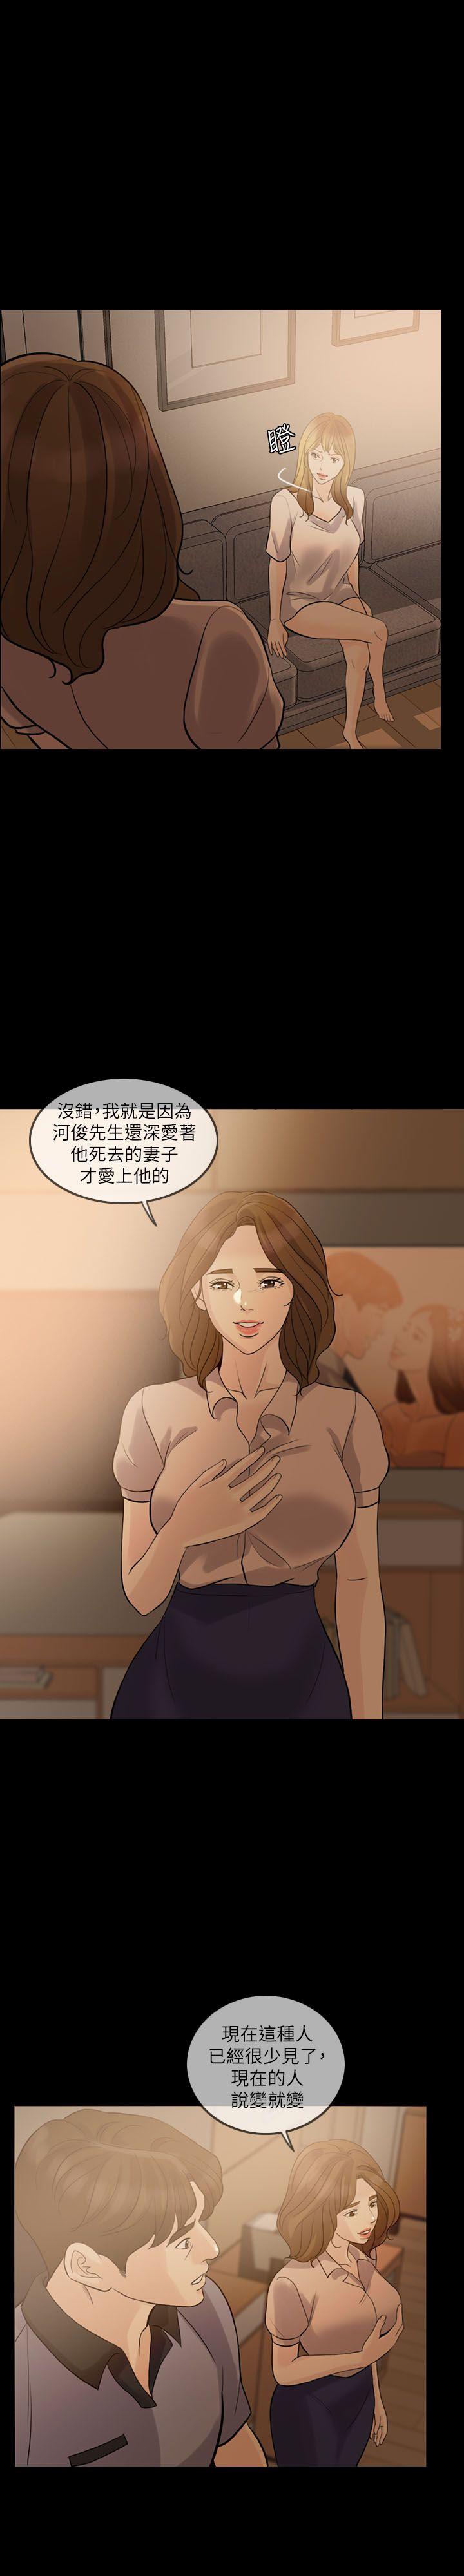 韩国污漫画 失控的愛 第9话 17